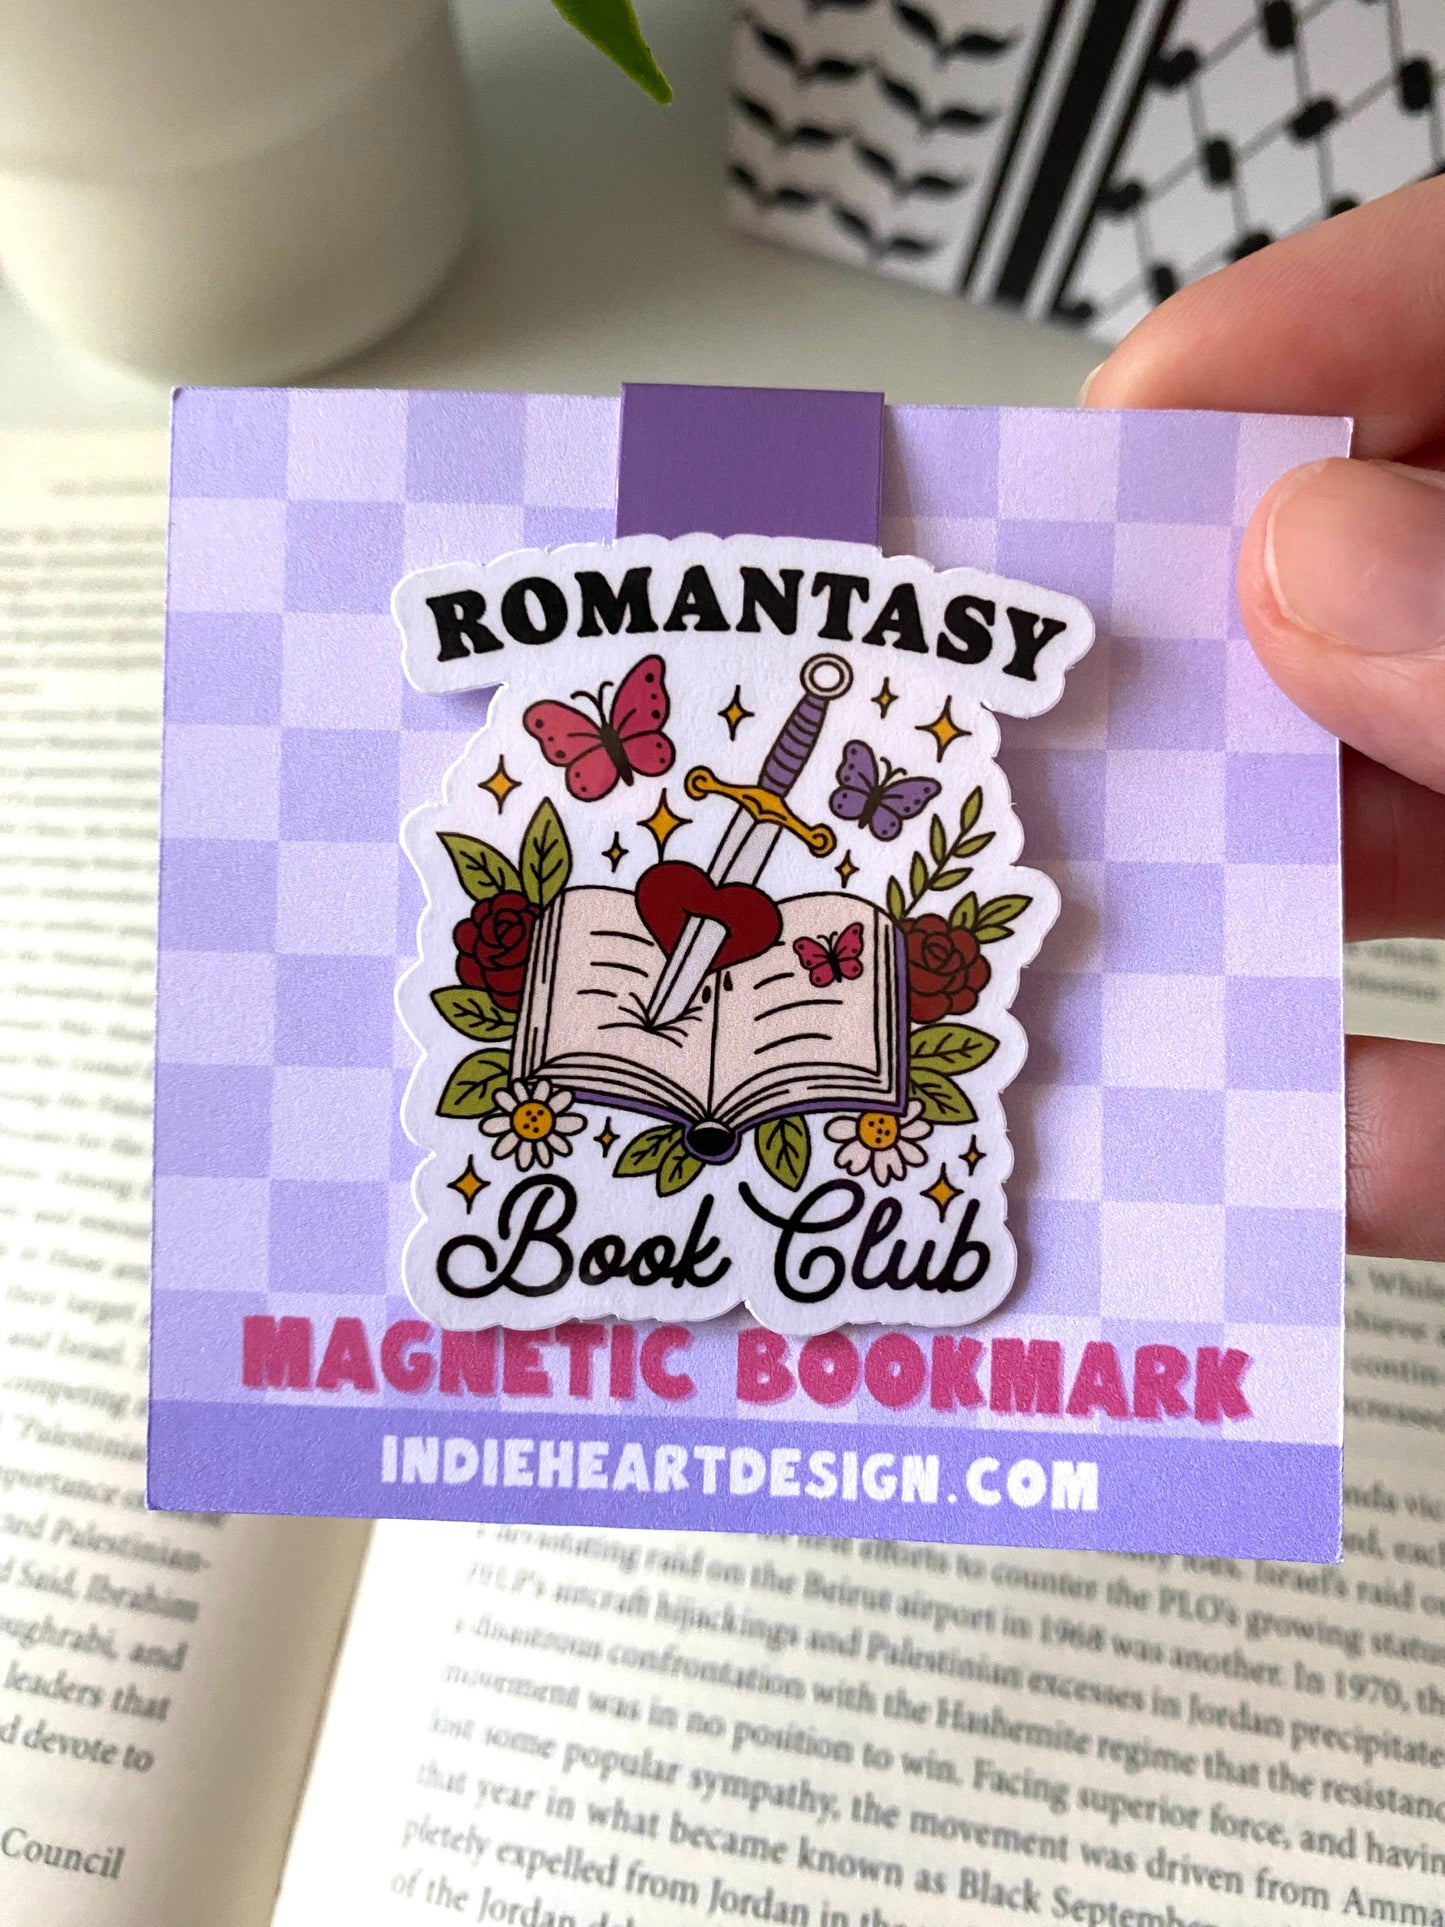 Romanstasy Magnetic Bookmark